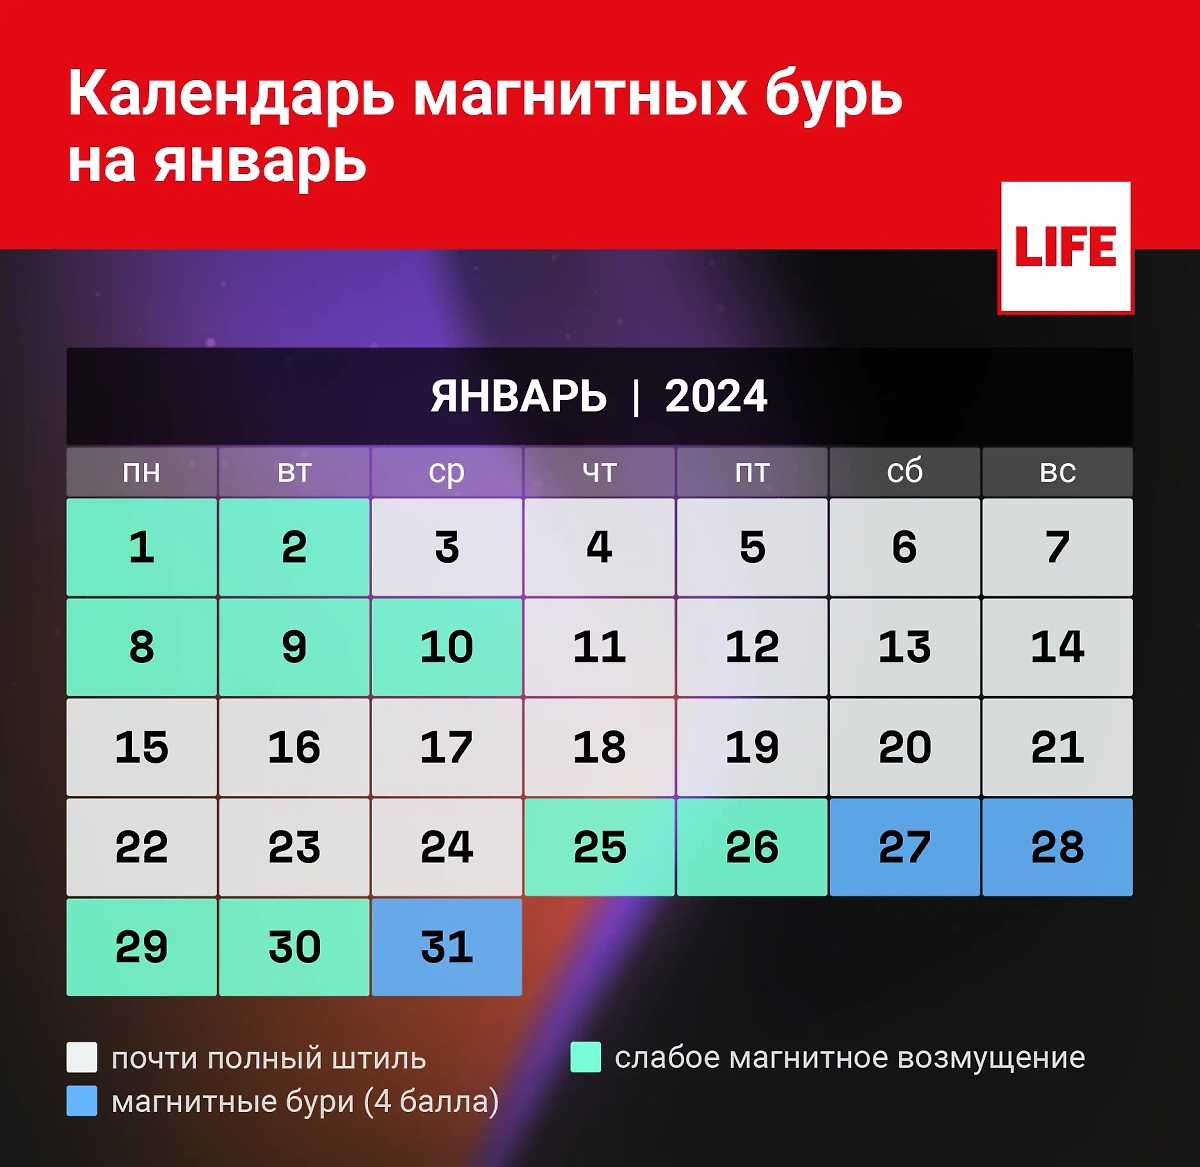 Календарь магнитных бурь на январь 2024 года. Инфографика © LIFE